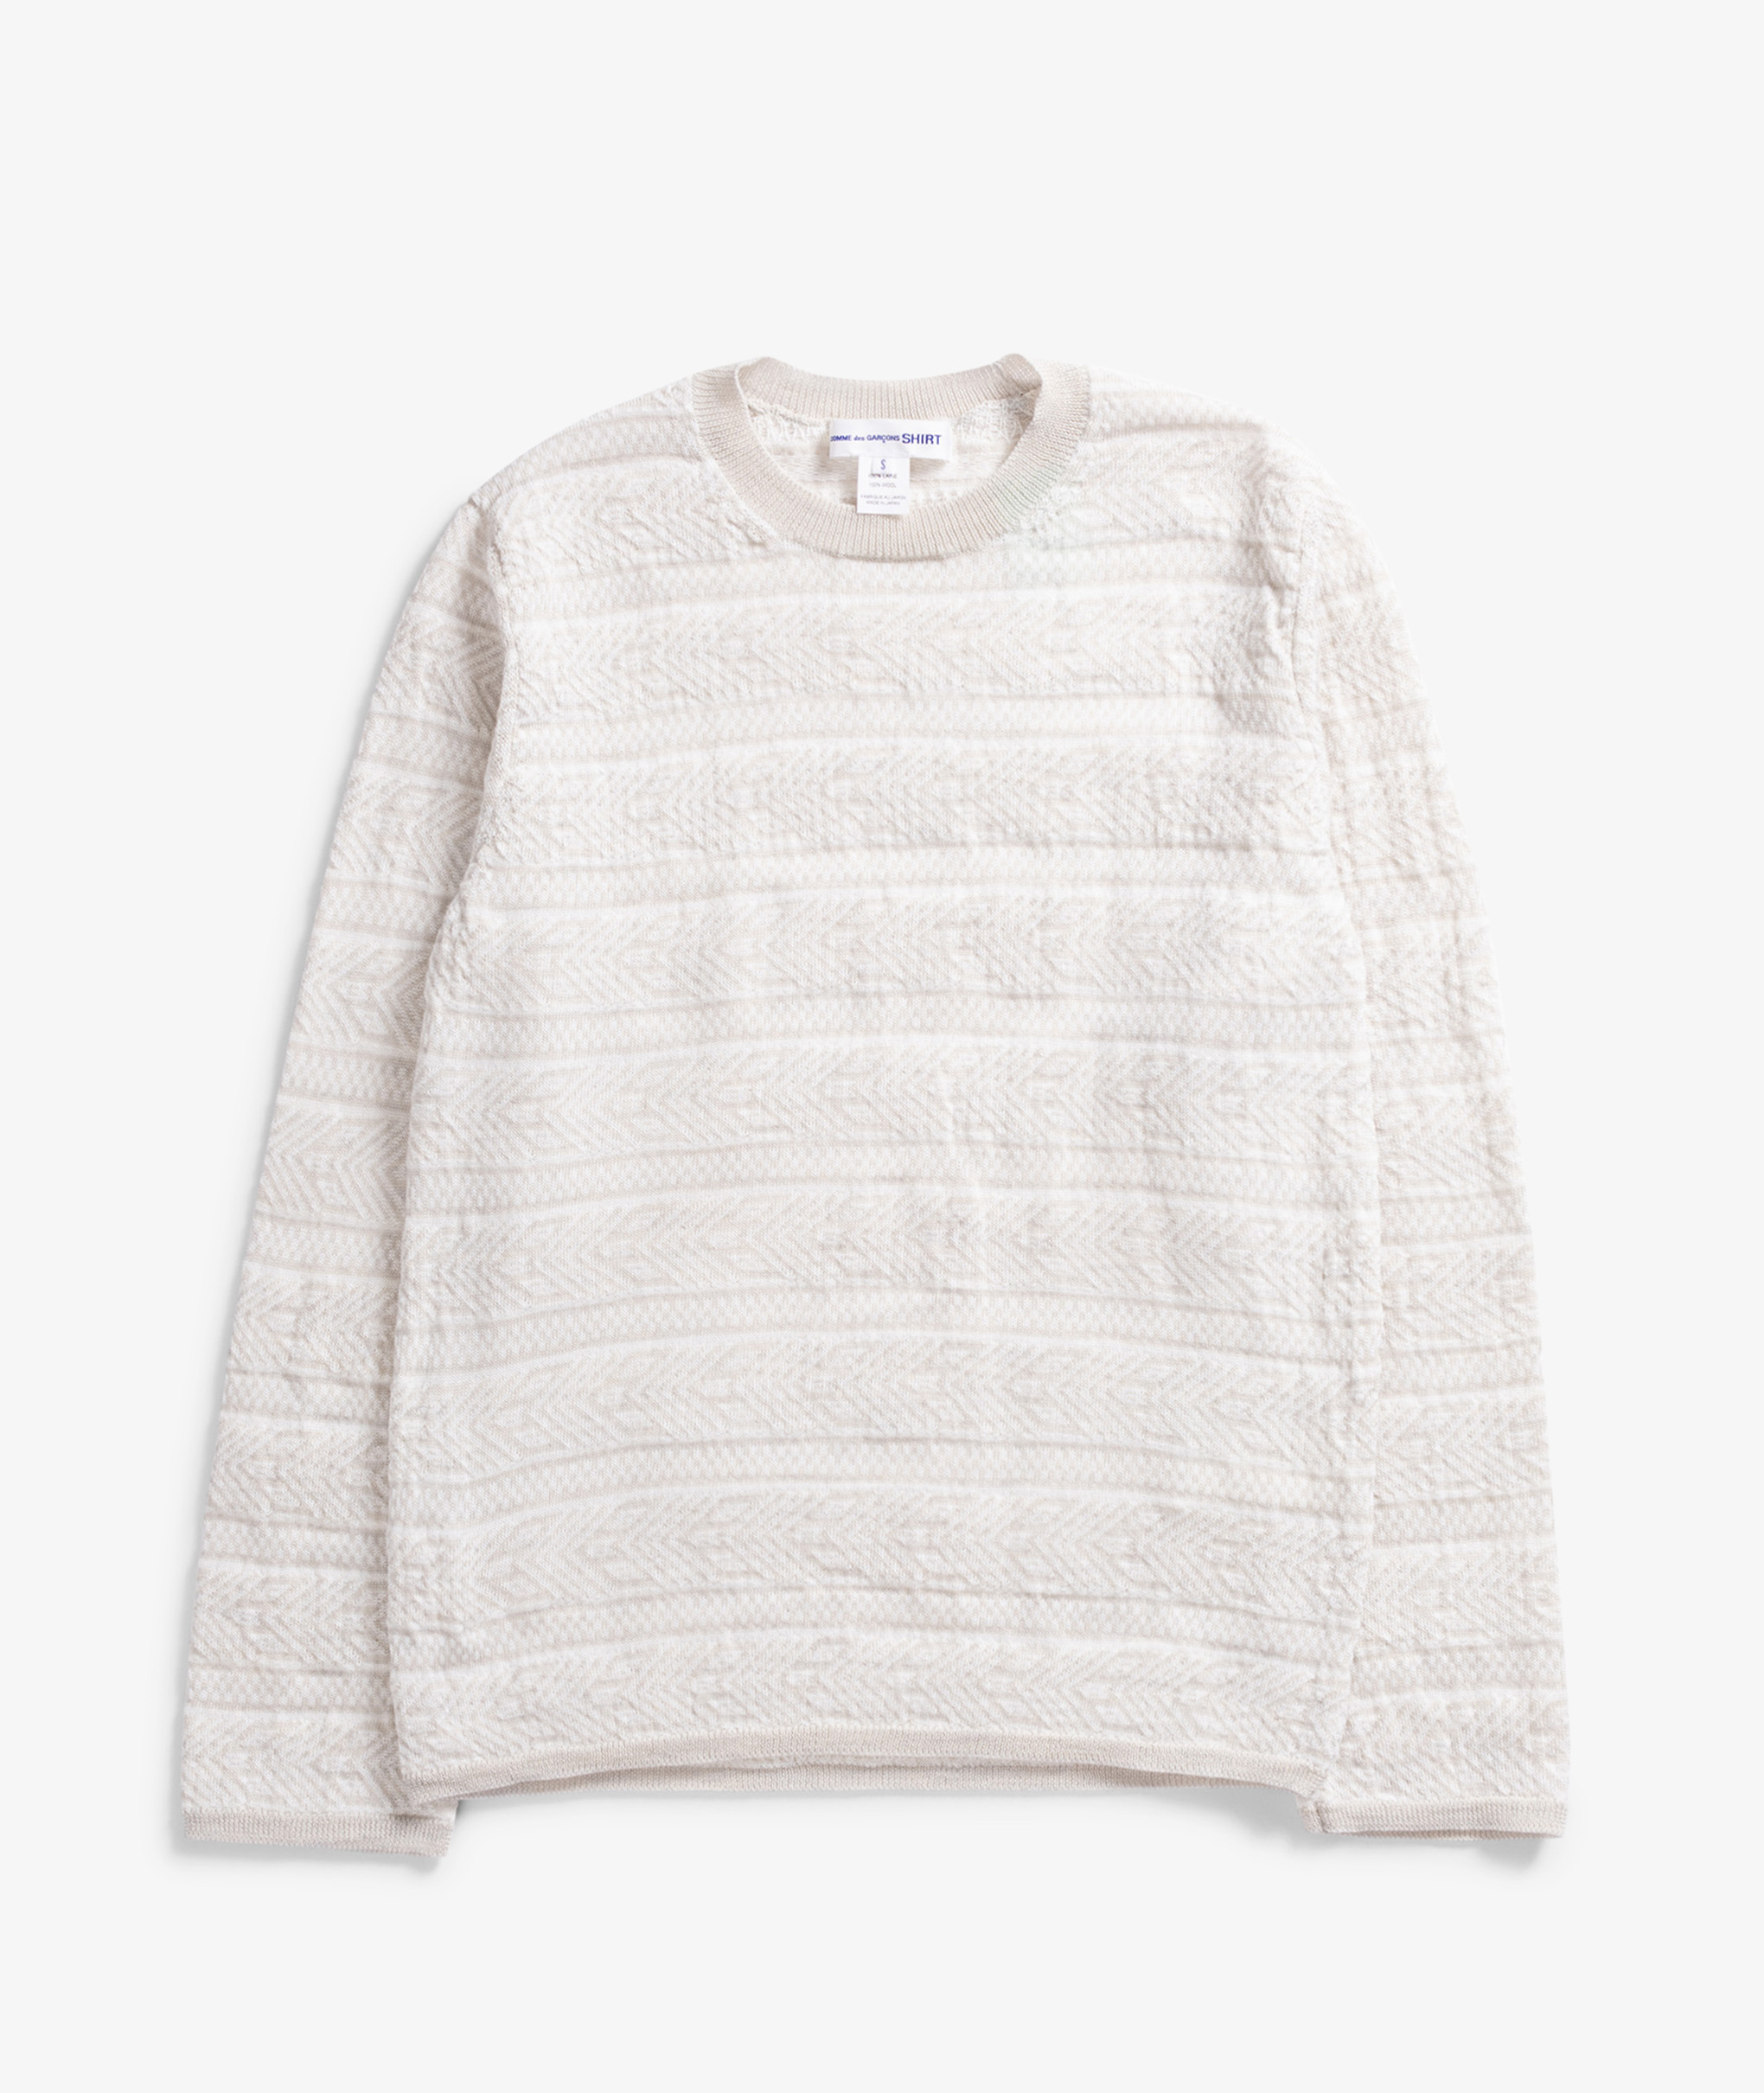 Norse Store | Shipping Worldwide - COMME des GARÇONS SHIRT Knitted Sweater - Light